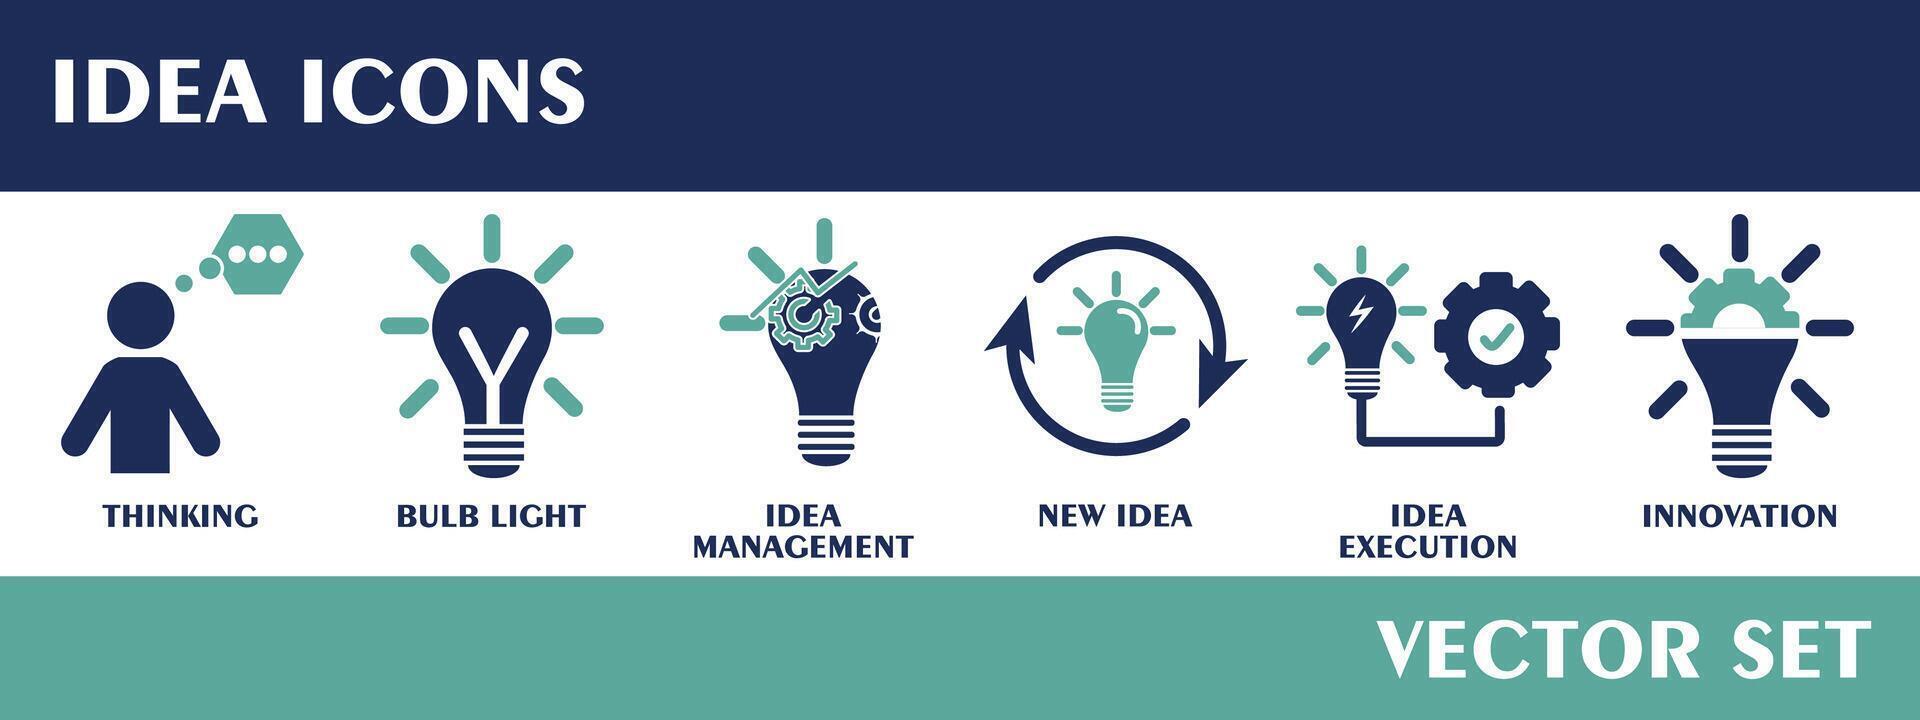 idee pictogrammen. met denken, lamp licht, idee beheer, nieuw idee, idee uitvoering, innovatie. vlak ontwerp vector reeks